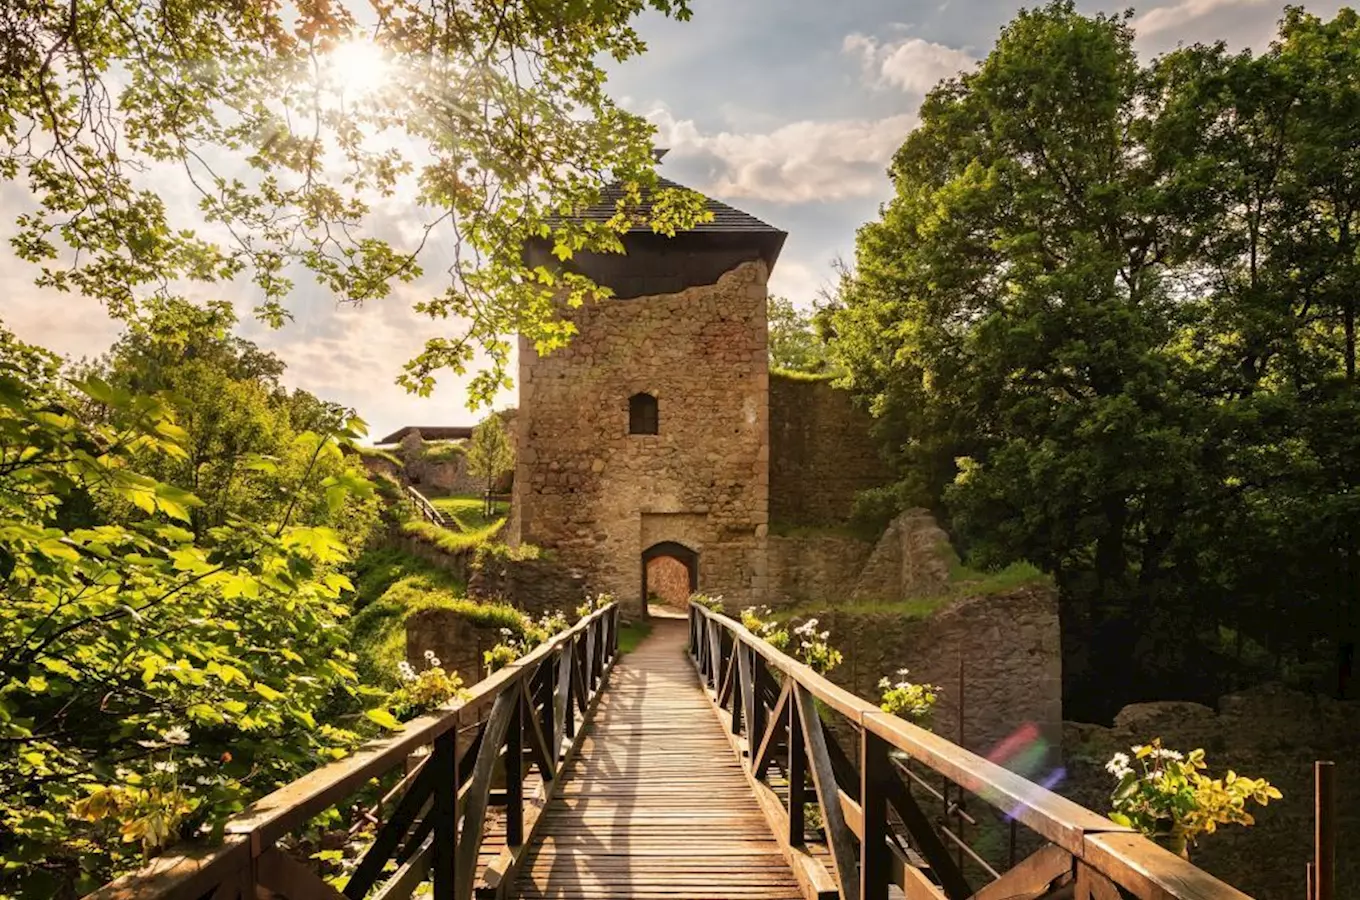 Den hradu Lukova nabídne zábavu i komentovanou prohlídku